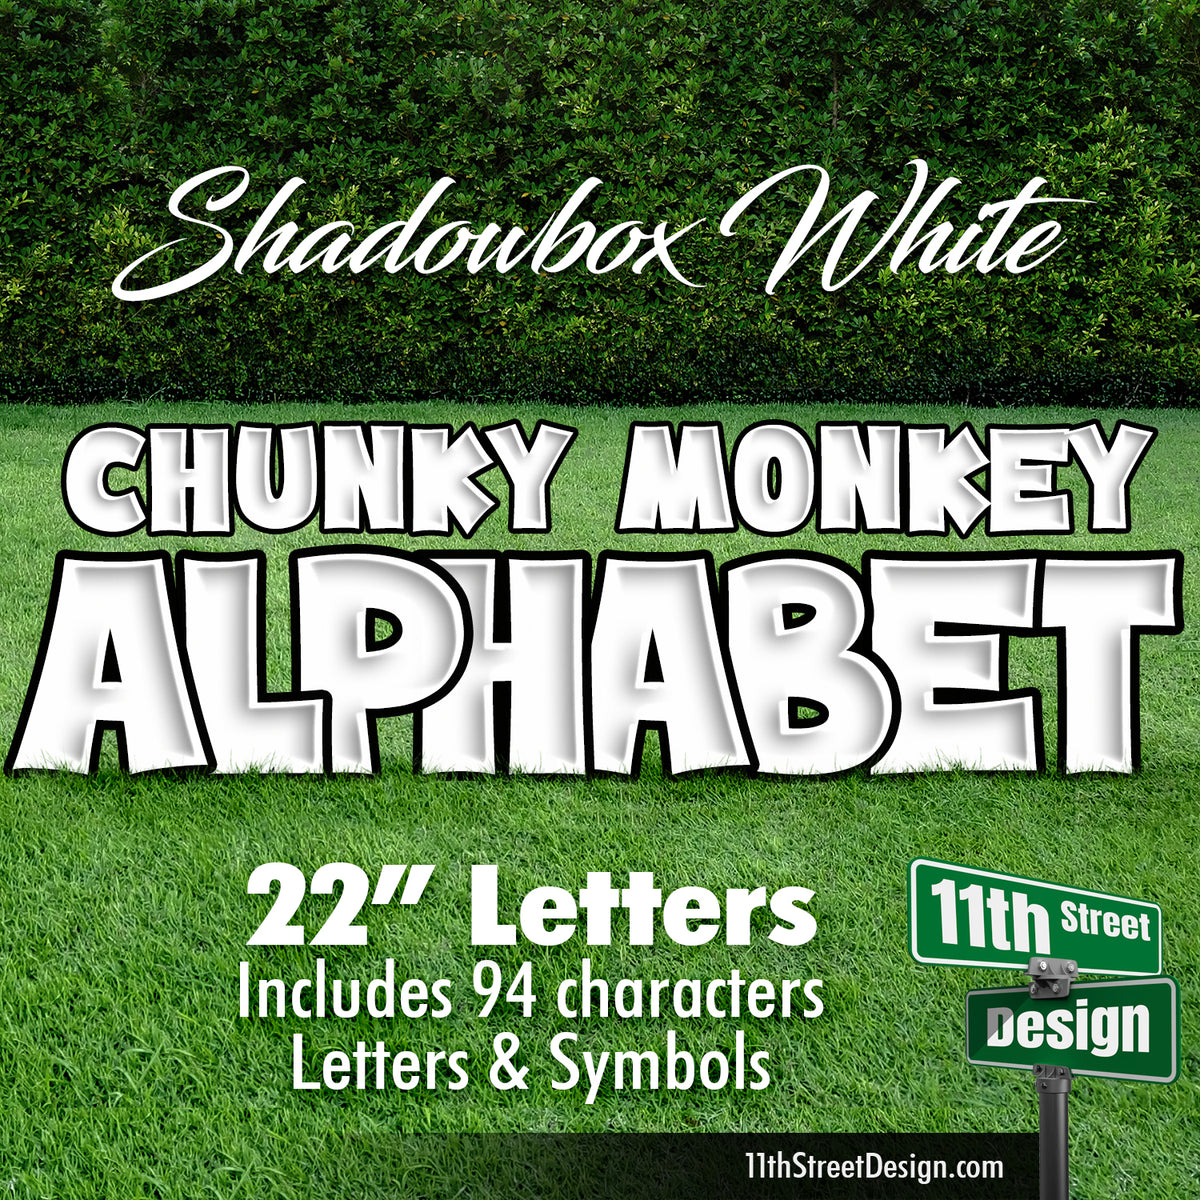 Shadowbox White 22&quot; Chunky Monkey Full Alphabet Yard Card Set Includes Letters &amp; Symbols